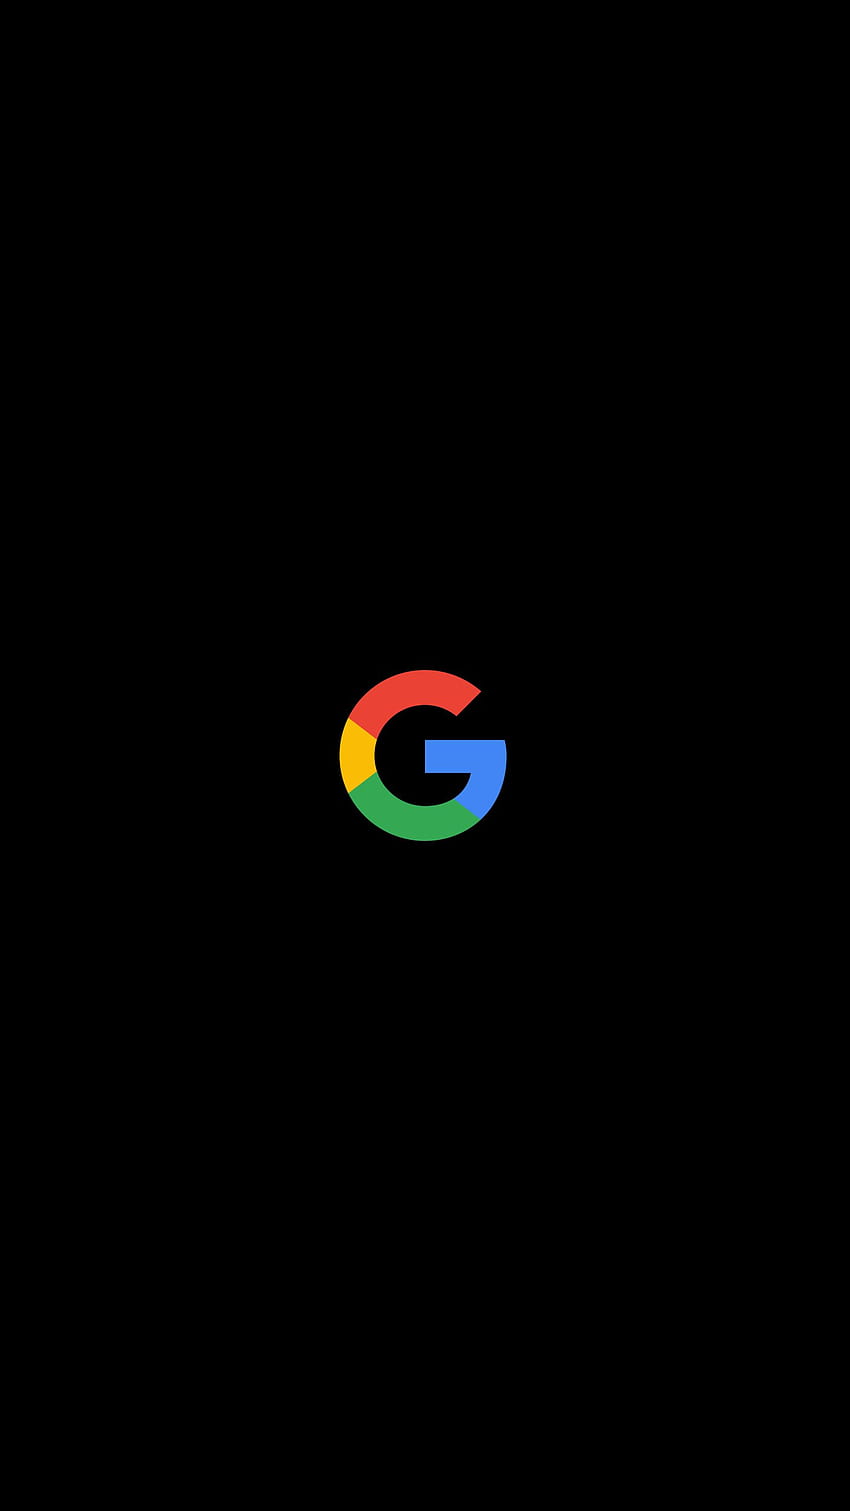 İşte sizin için yaptığım bazı Google logolu OLED'ler [Pixel XL'e uyacak şekilde yapılmış]: GooglePixel, google piksel oled HD telefon duvar kağıdı